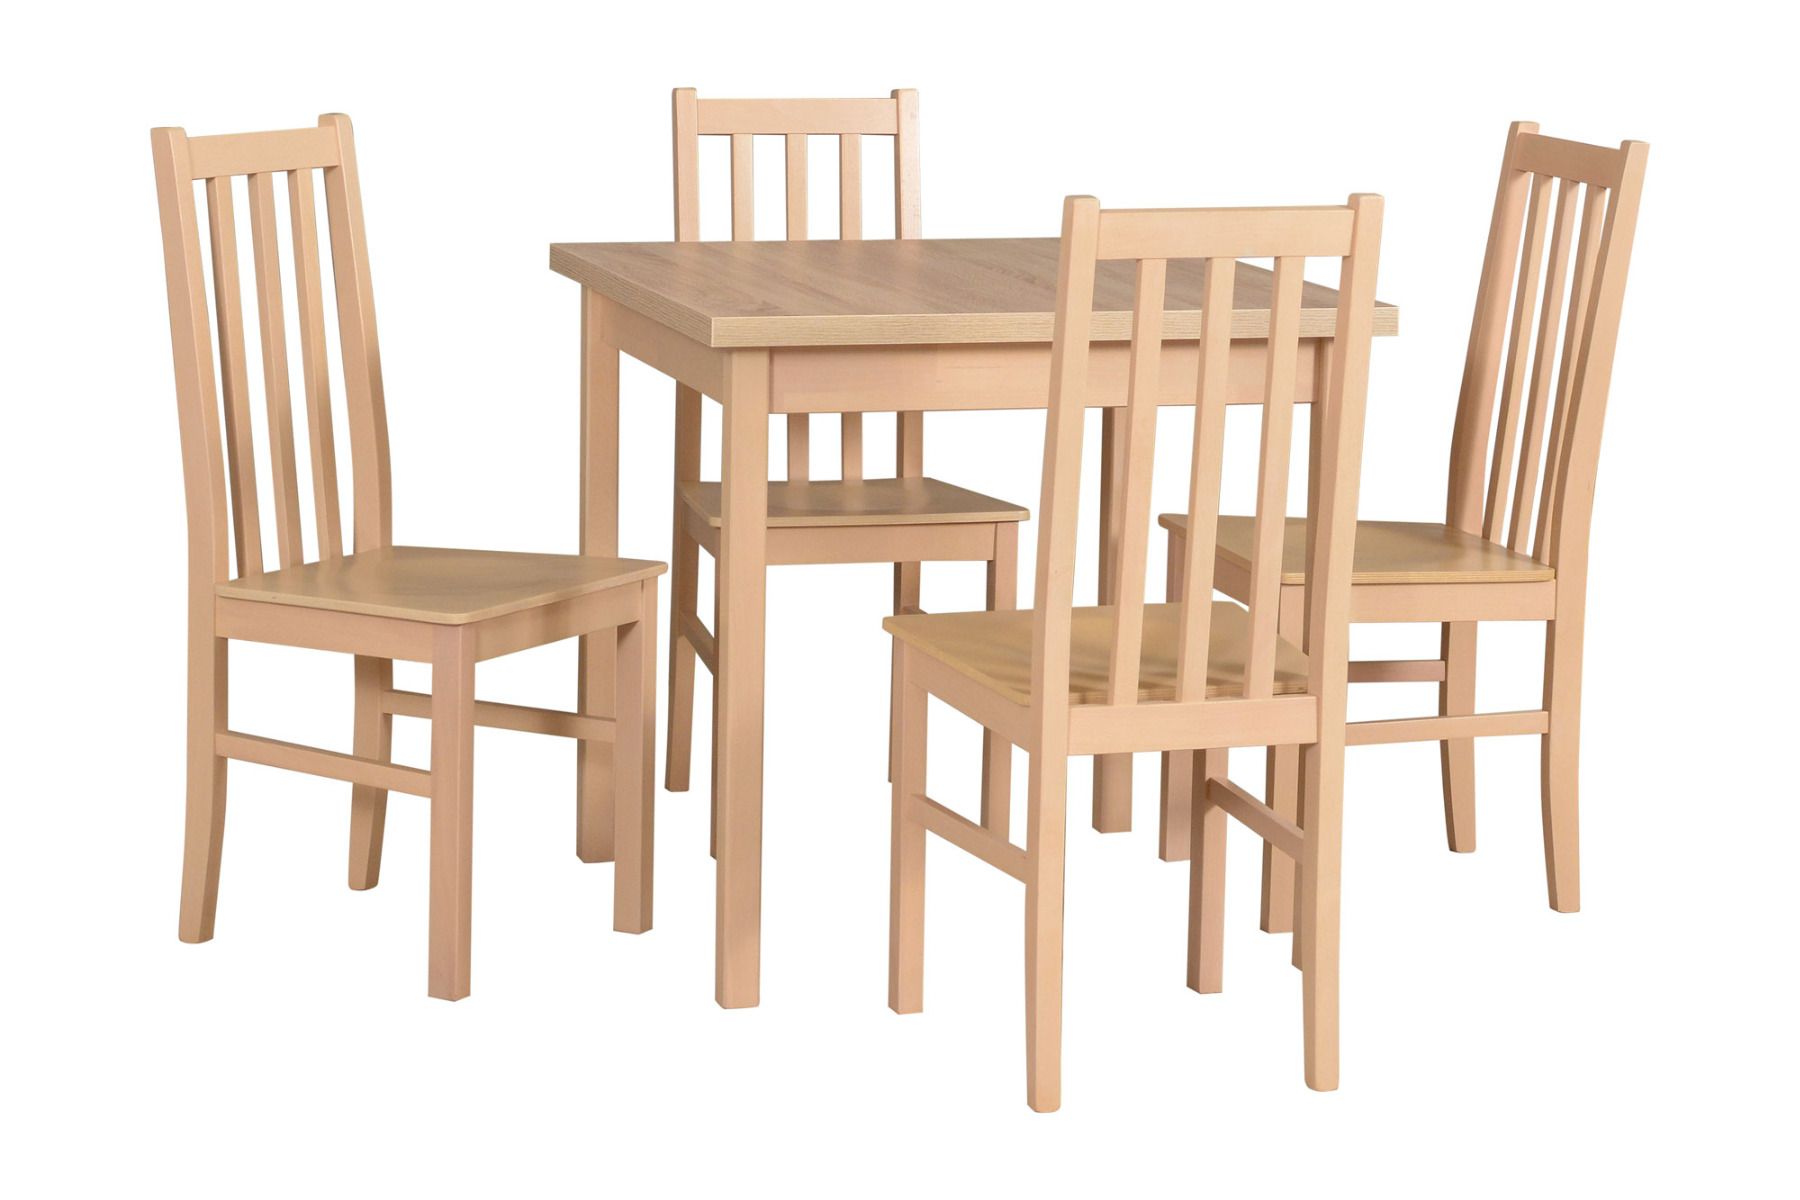 Esszimmer Komplett - Set F, 5 - teilig, Holzfarbe: Eiche, einfaches Design, 4 massive Holzstühle, robuster Tisch, platzsparend, solide Ausführung